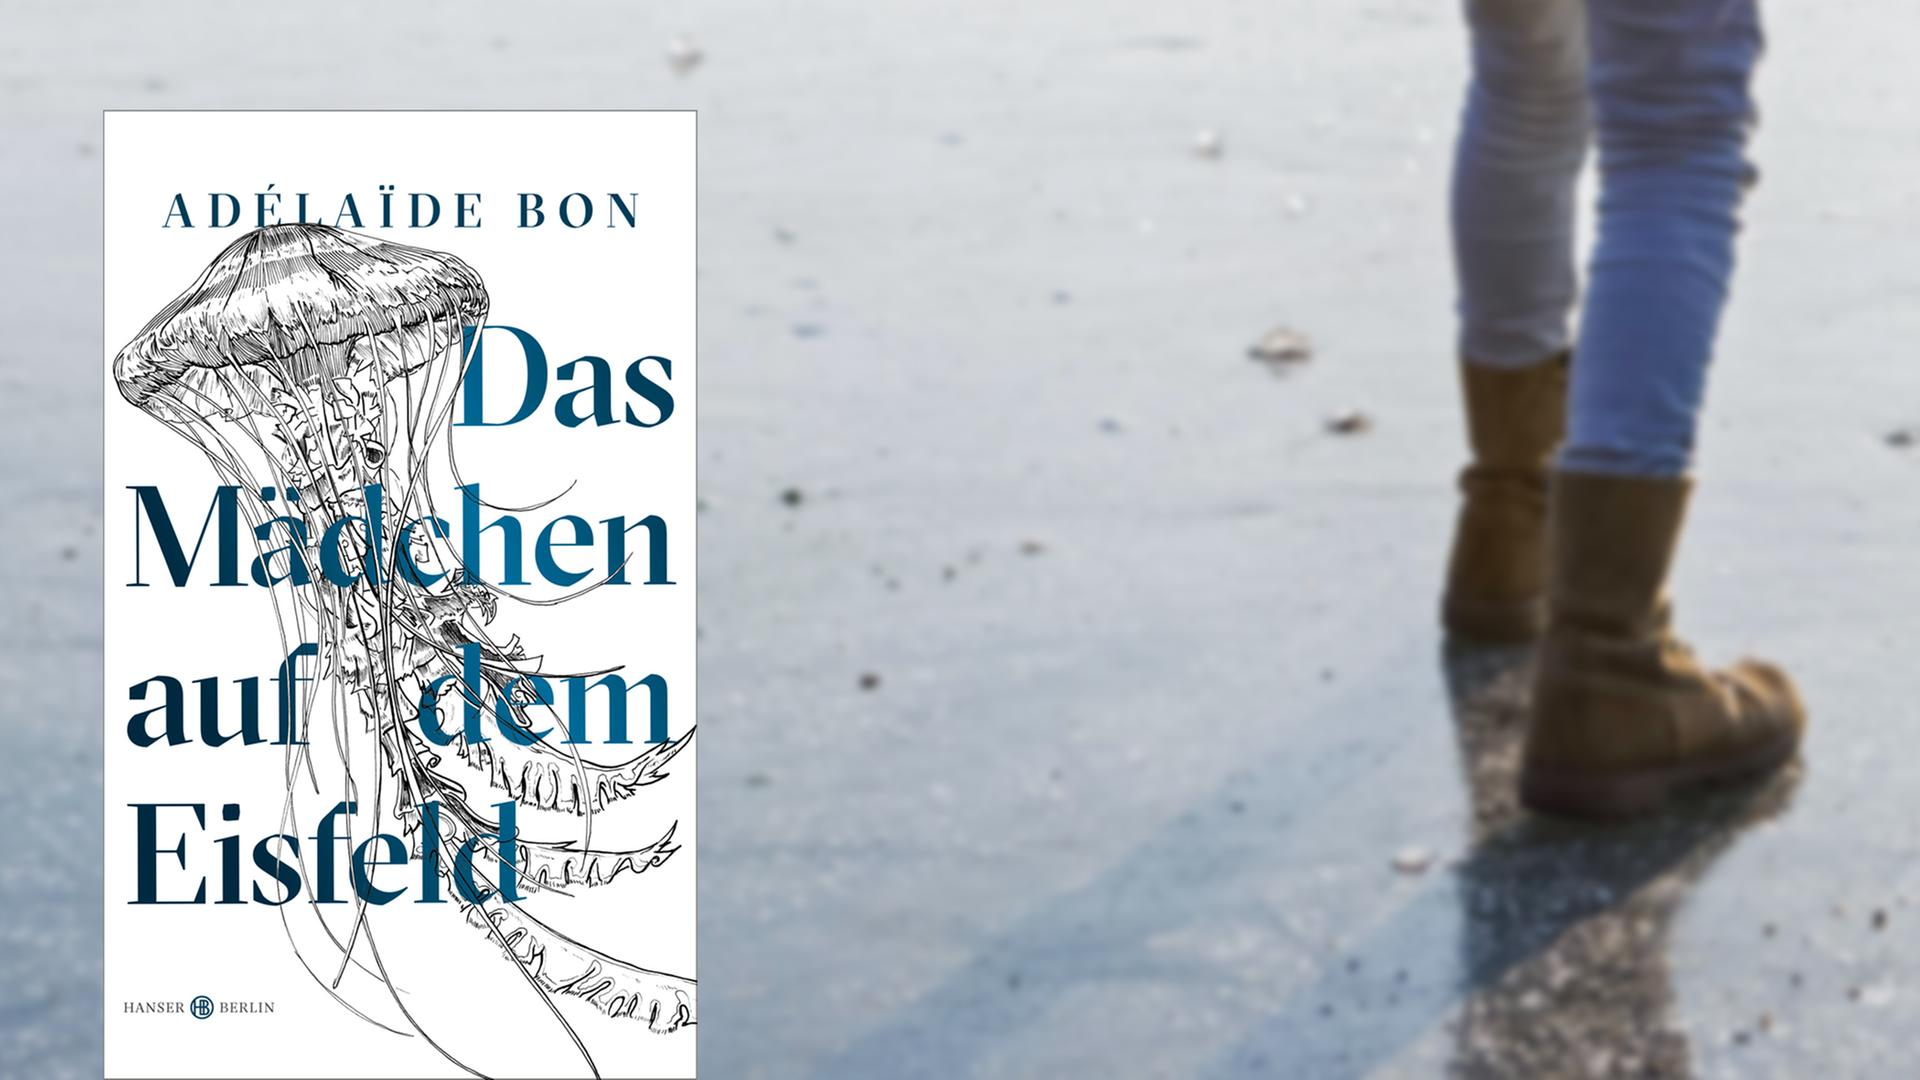 Buchcover "Das Mädchen auf dem Eisfeld" von Adelaïde Bon, im Hintergrund die Füße eines Mädchens, das über einen zugefrorenen See läuft.